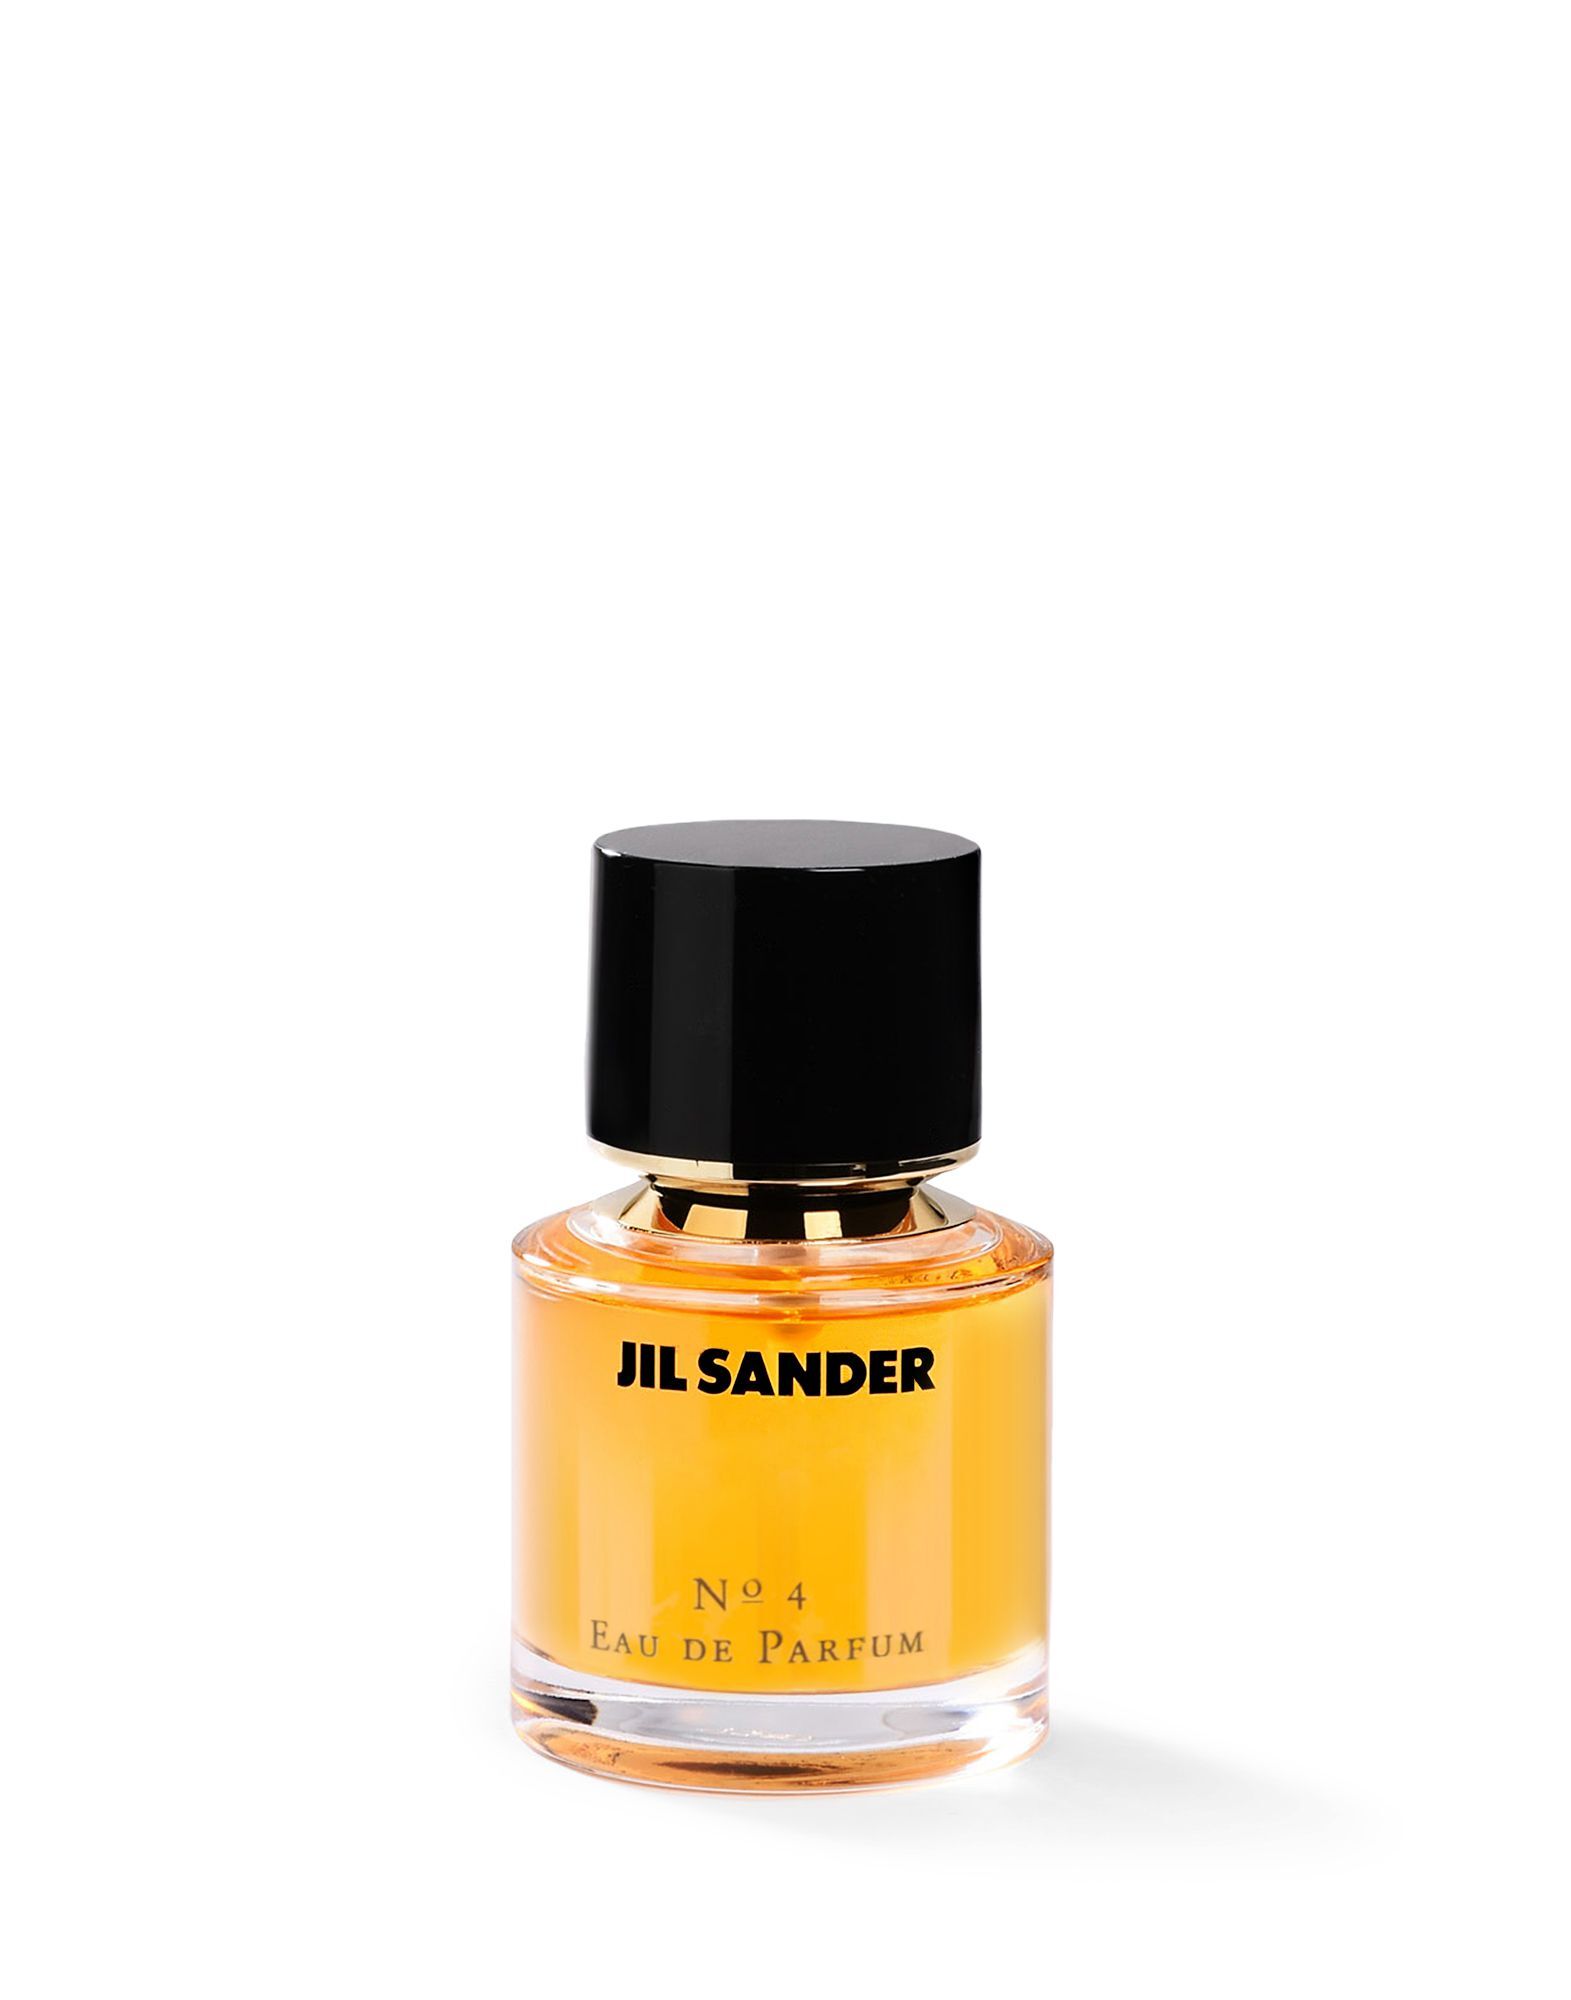 Jil Sander No.4 eau de parfum / 50 ml / dames